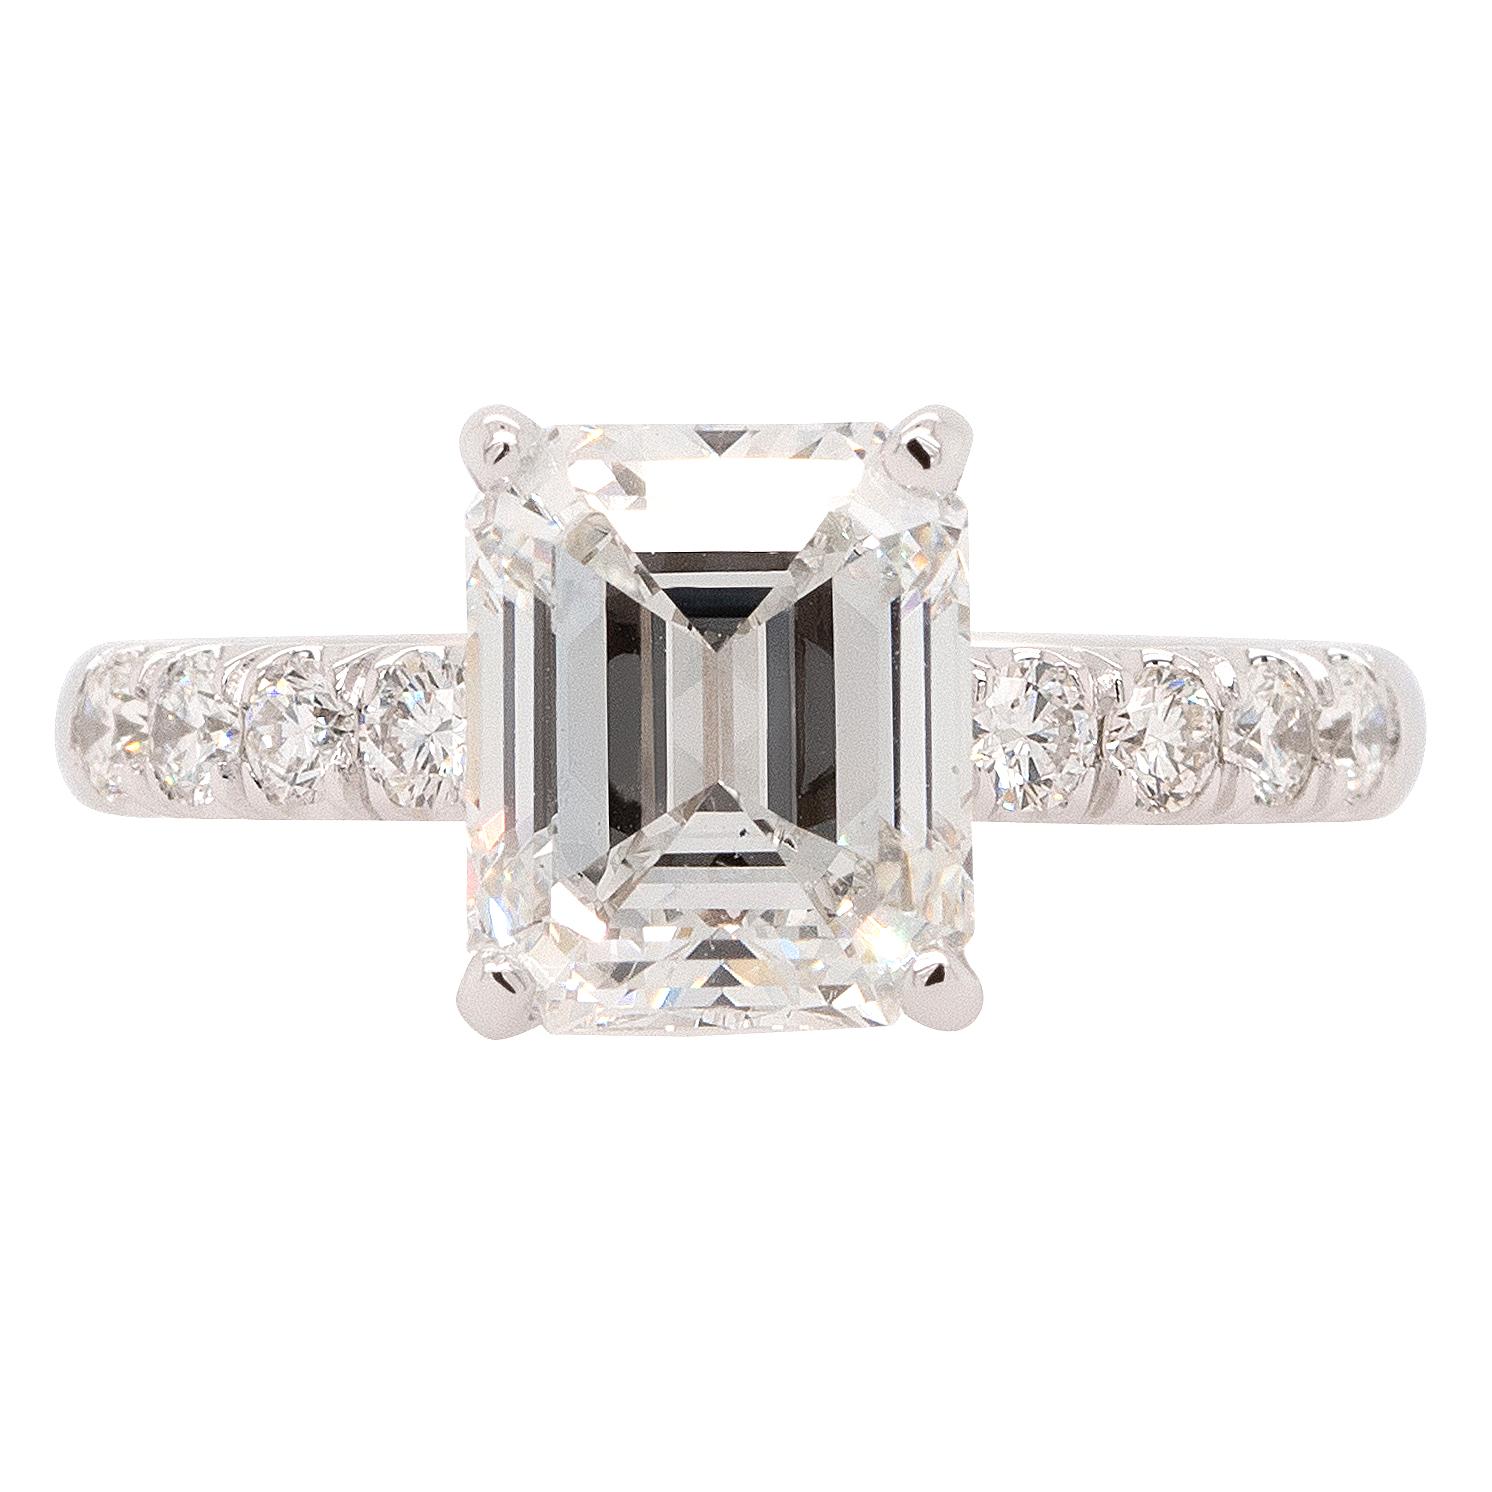 Dieser bezaubernde Ring enthält einen atemberaubenden Diamanten im Smaragdschliff (GIA) von 3,03 Karat in einer Fassung aus 14 Karat Weißgold. Der Diamant mit der beeindruckenden Farbe F und der Klarheit VVS2 strahlt Brillanz und Schönheit aus.